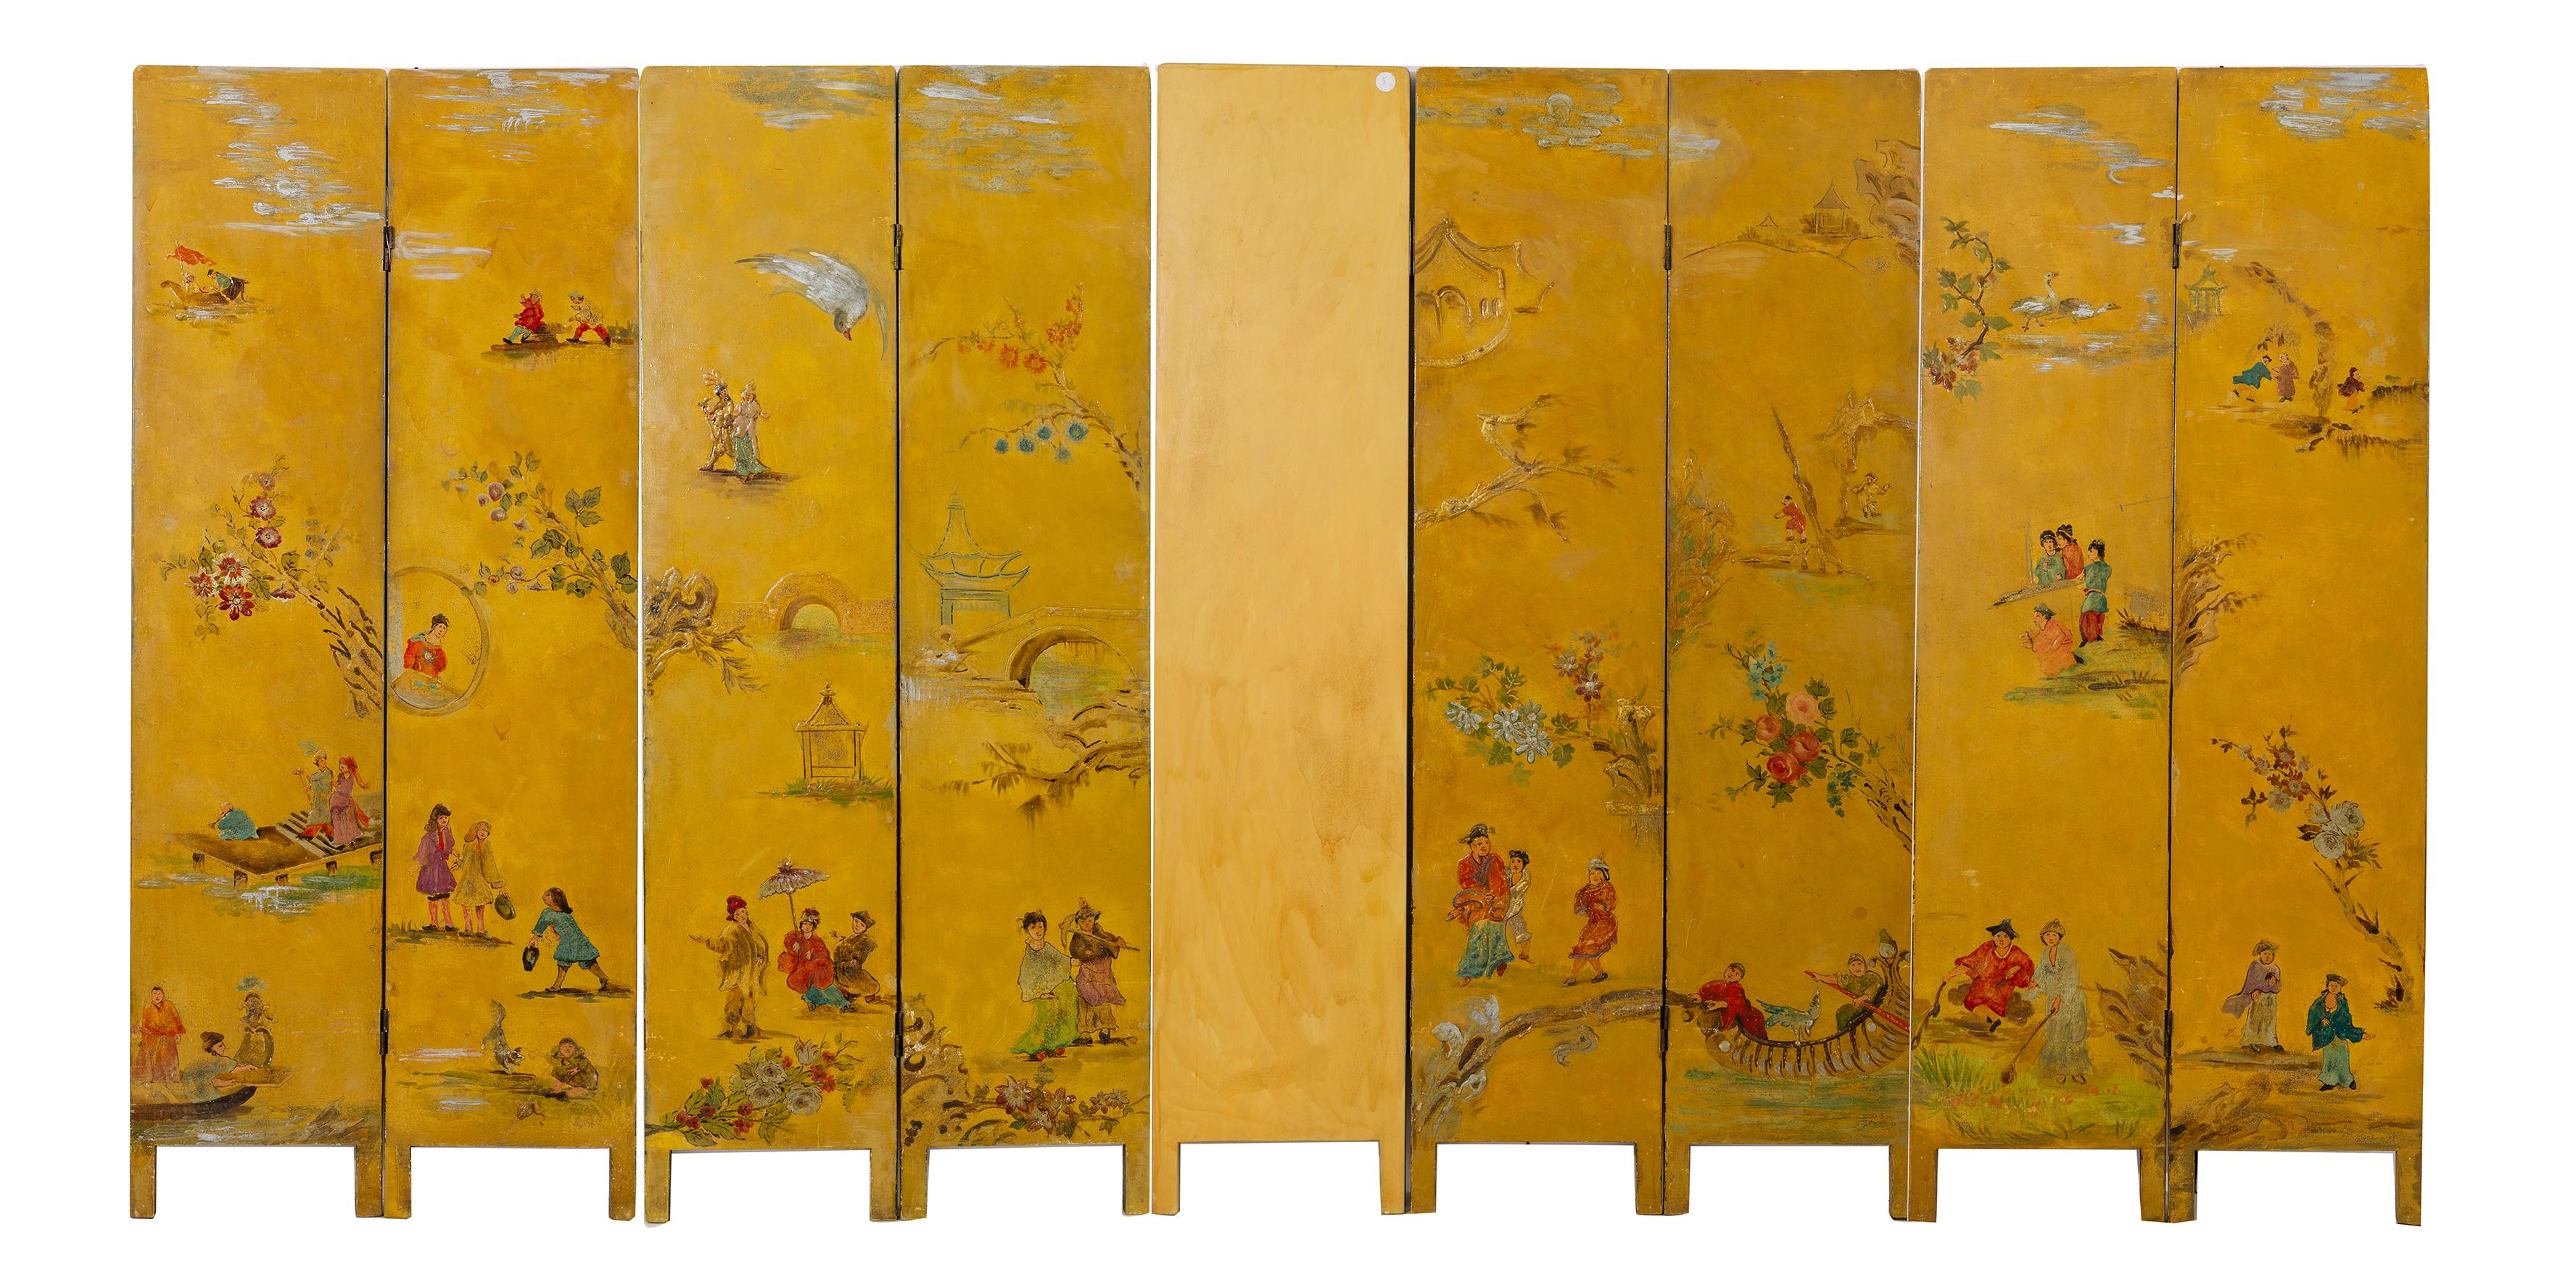 M/781 - Interessant groß  handbemalt auf Holz  hoher Bildschirm : aus Frankreich, Mitte '800. 
Es kann der Hintergrund einer ganzen Wand sein: ein imaginärer Garten mit dem Triumph der Blumen; auf der anderen Seite: Chinesisch lackiert.
Insgesamt